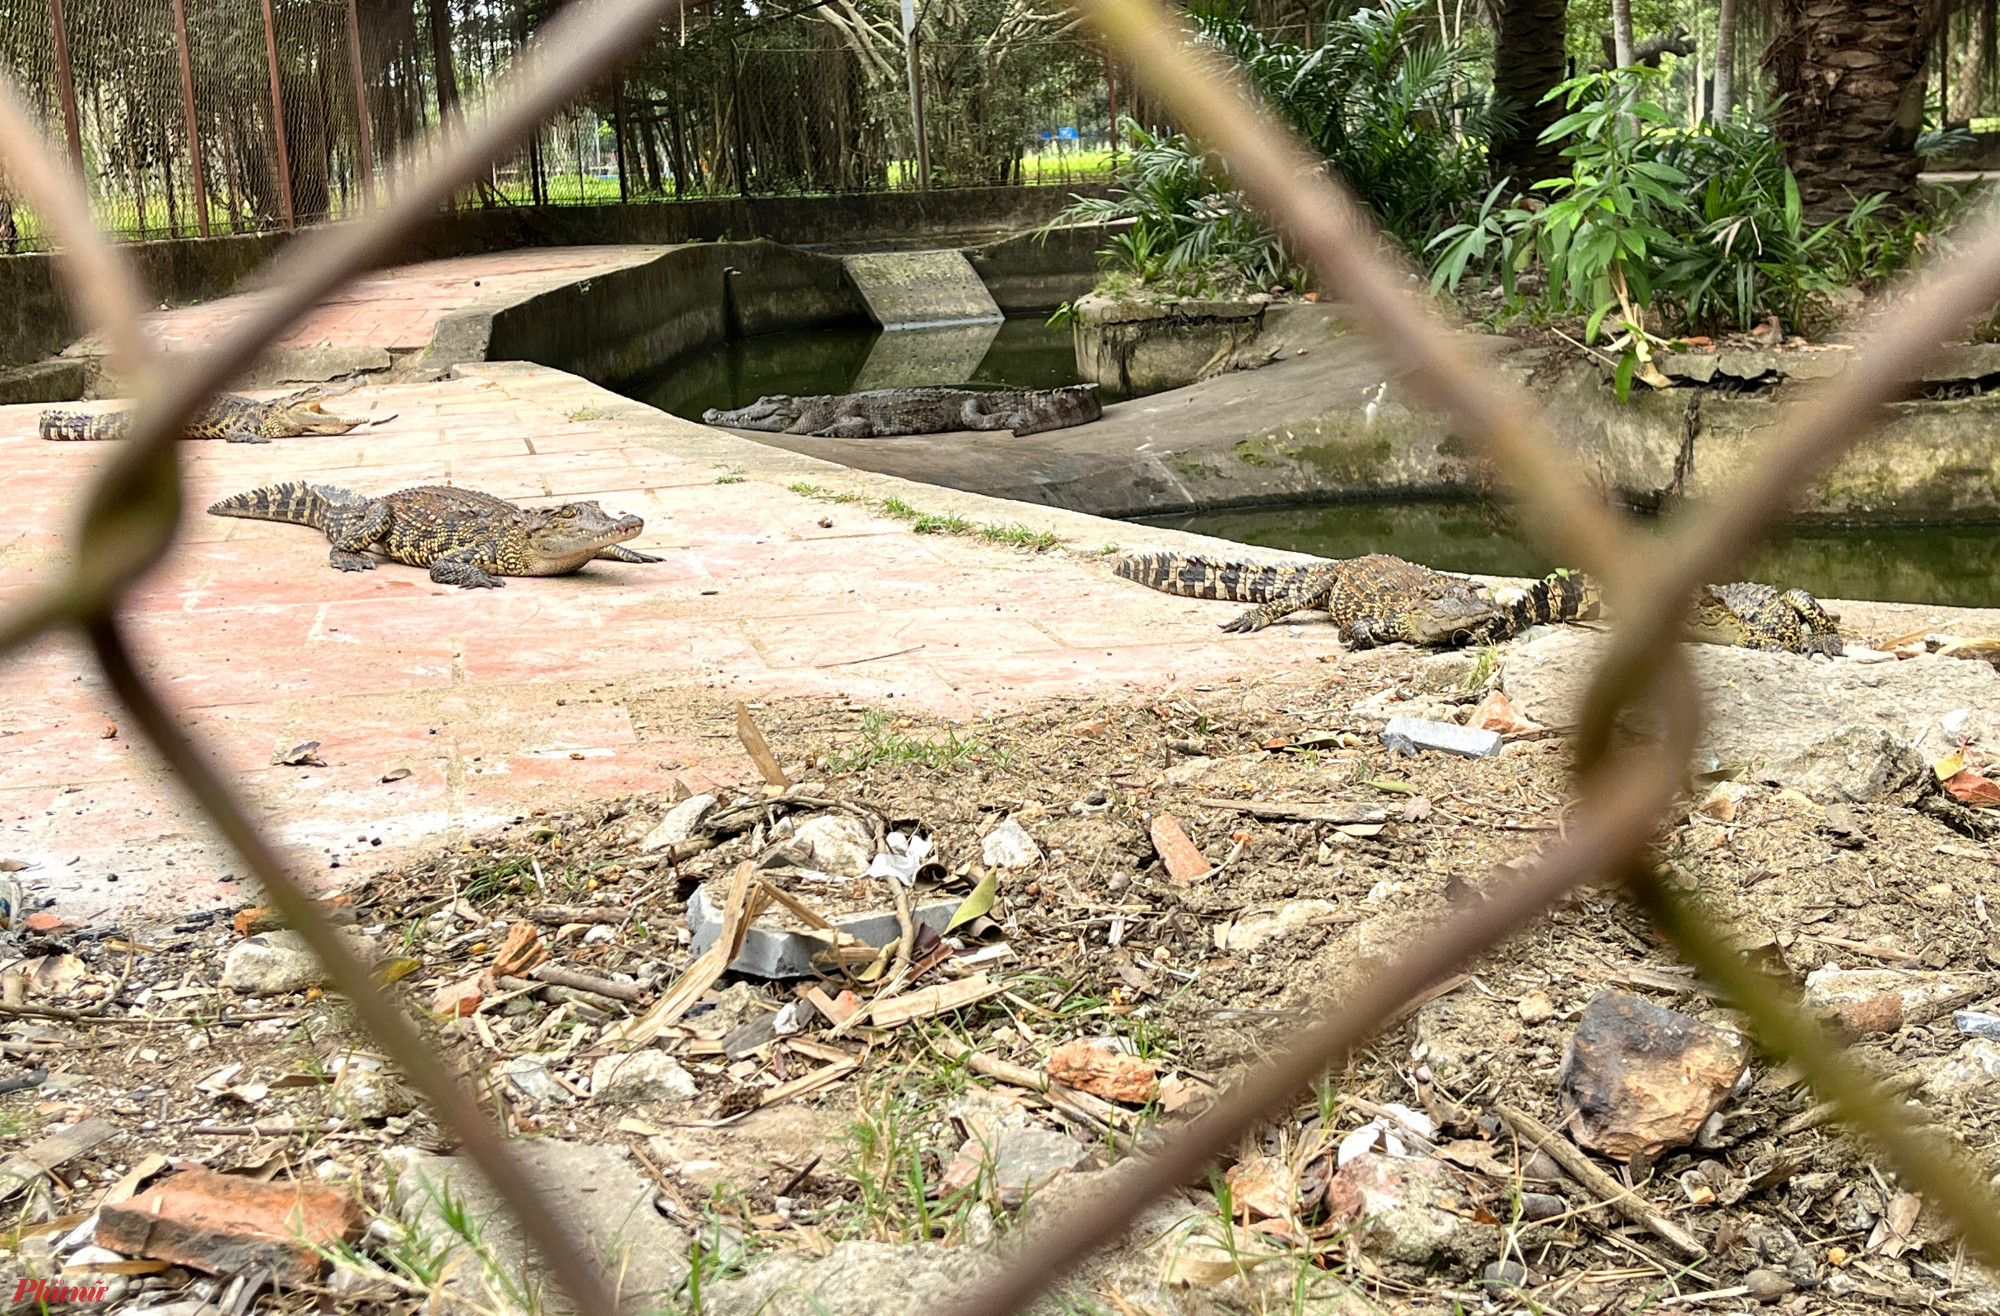 Công viên trung tâm TP Vinh từng nuôi hàng chục loài động vật để phục vụ du khách tham quan. Nhưng nay chỉ còn lại duy nhất một đàn cá sấu hơn 10 con. Khu vực nuôi cá sấu đã cũ kỹ, được bao bọc bởi một hàng rào lưới thép B40 cao hơn 1,5m, đã hoen gỉ. 